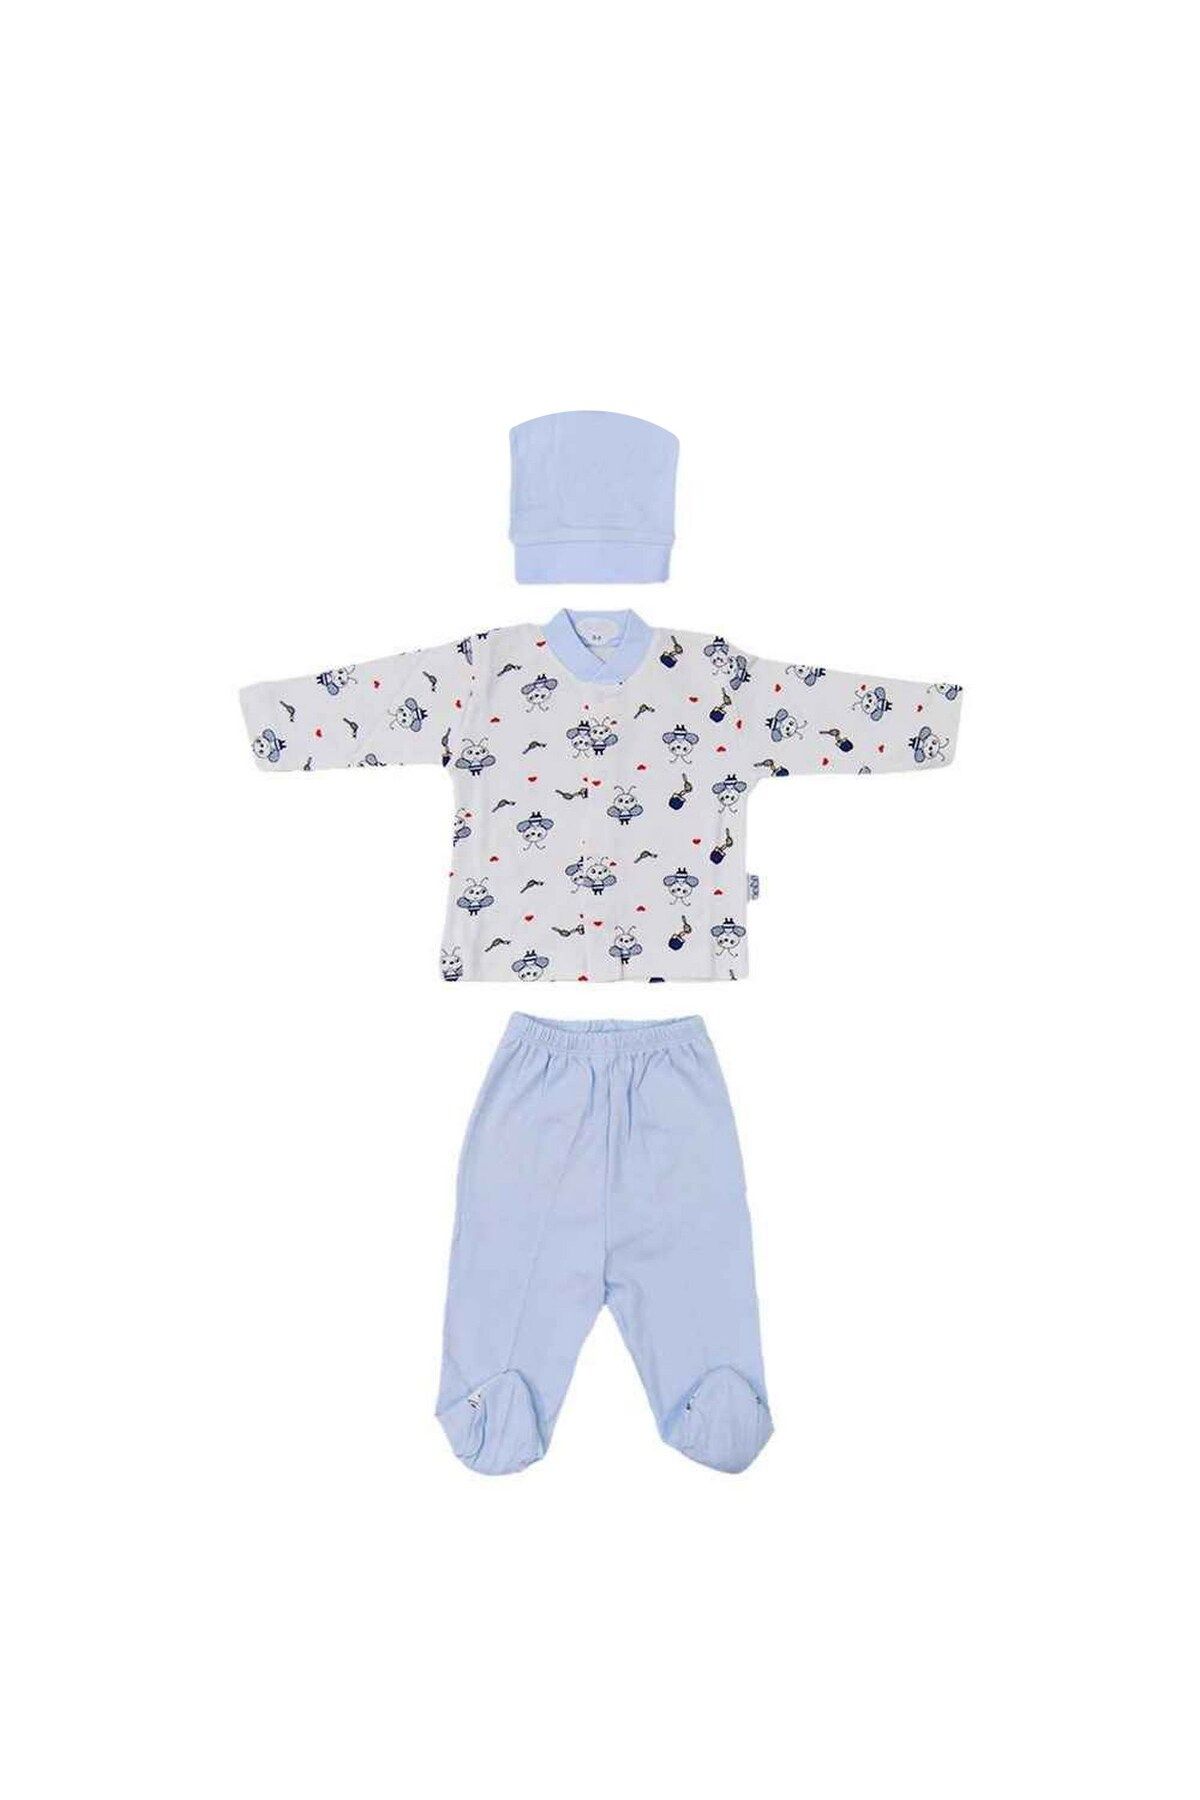 Sebi Bebe Arı Baskılı Pijama Takımı 2238